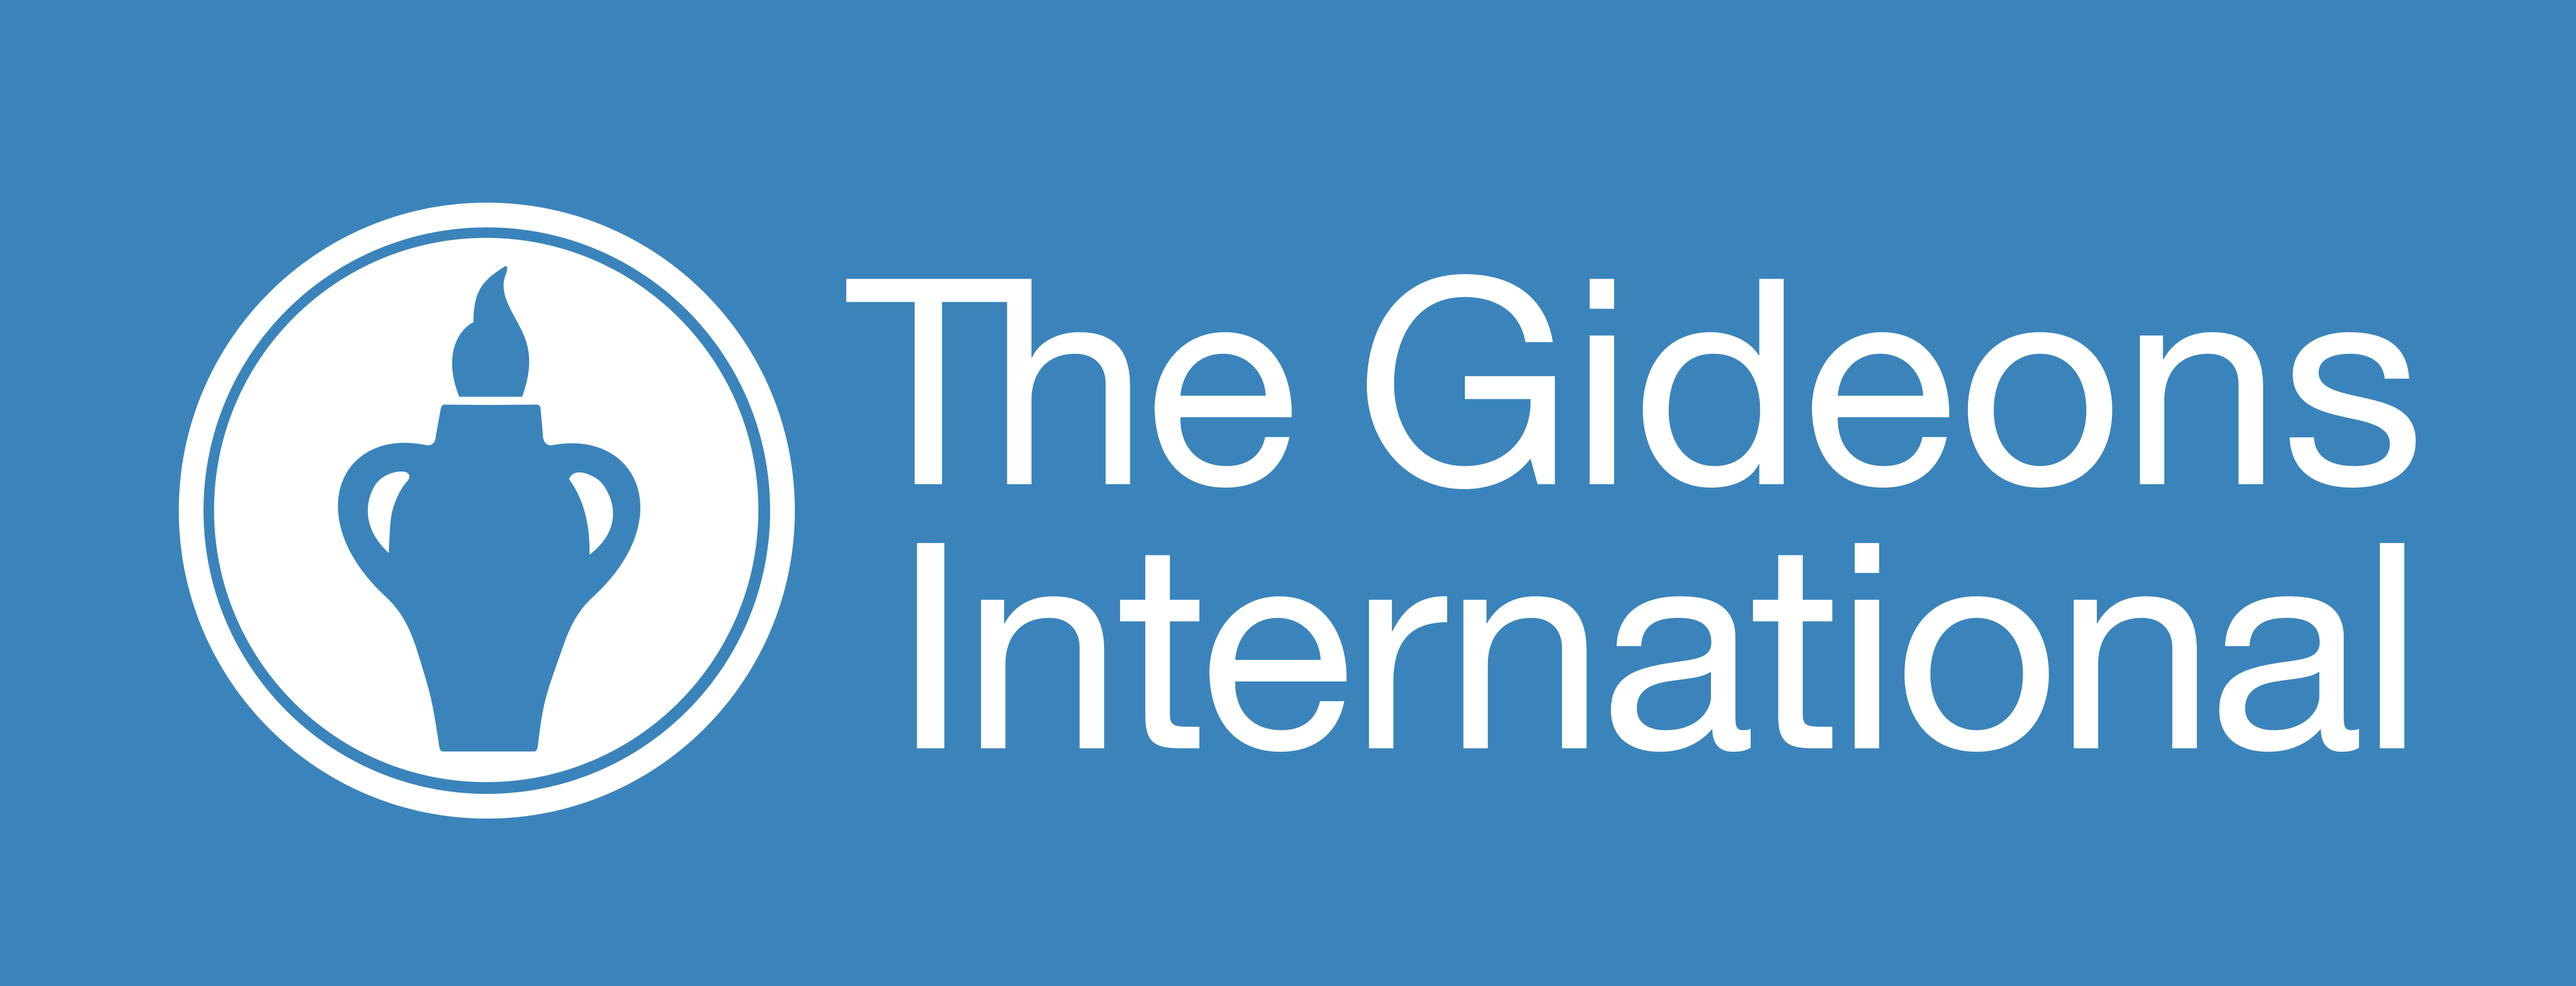 Gideons International – Logos Download